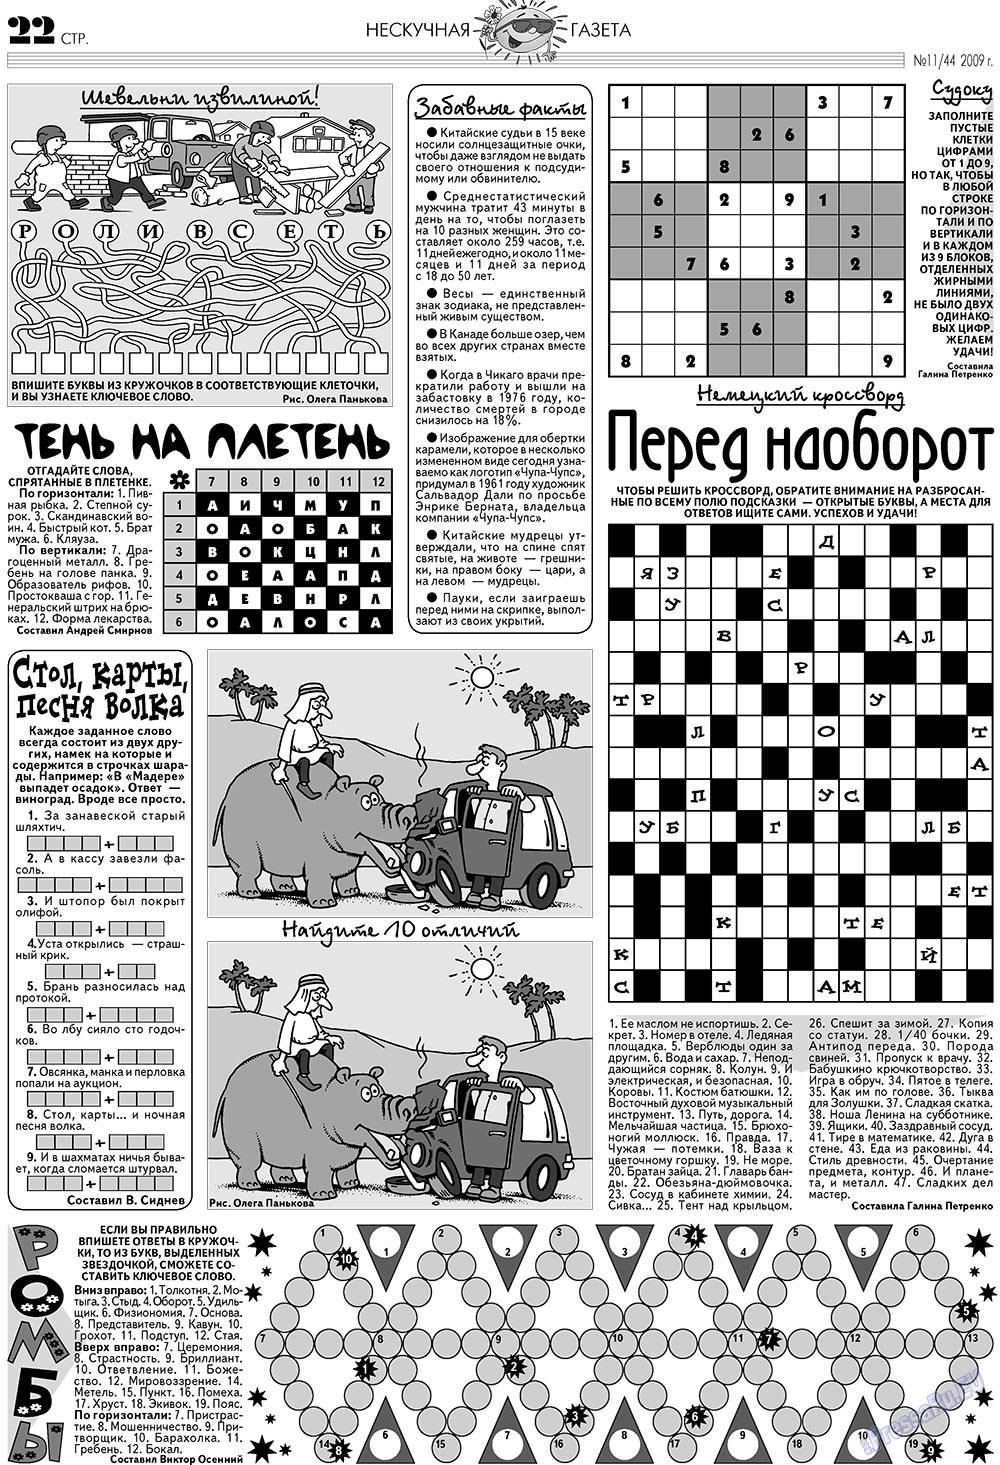 Нескучная газета, журнал. 2009 №11 стр.18